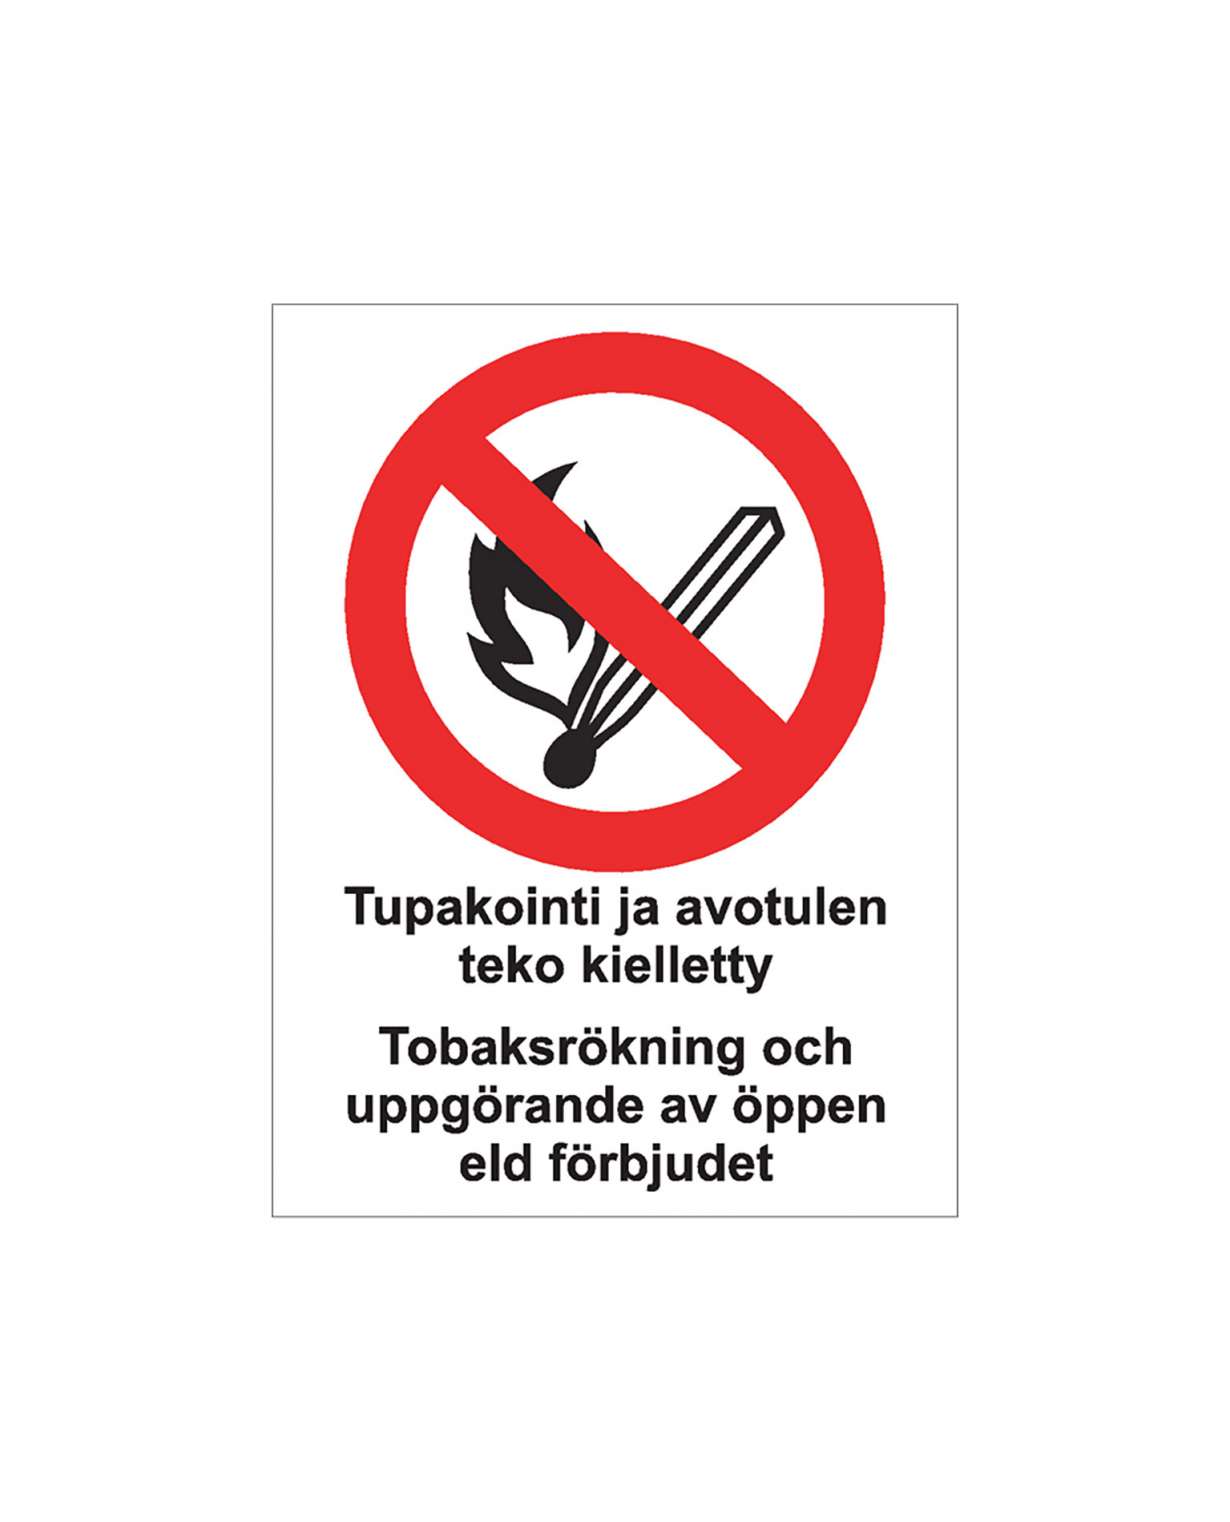 Tupakointi ja avotulen teko kielletty ruotsi, Ibond alumiini, 300x400 mm